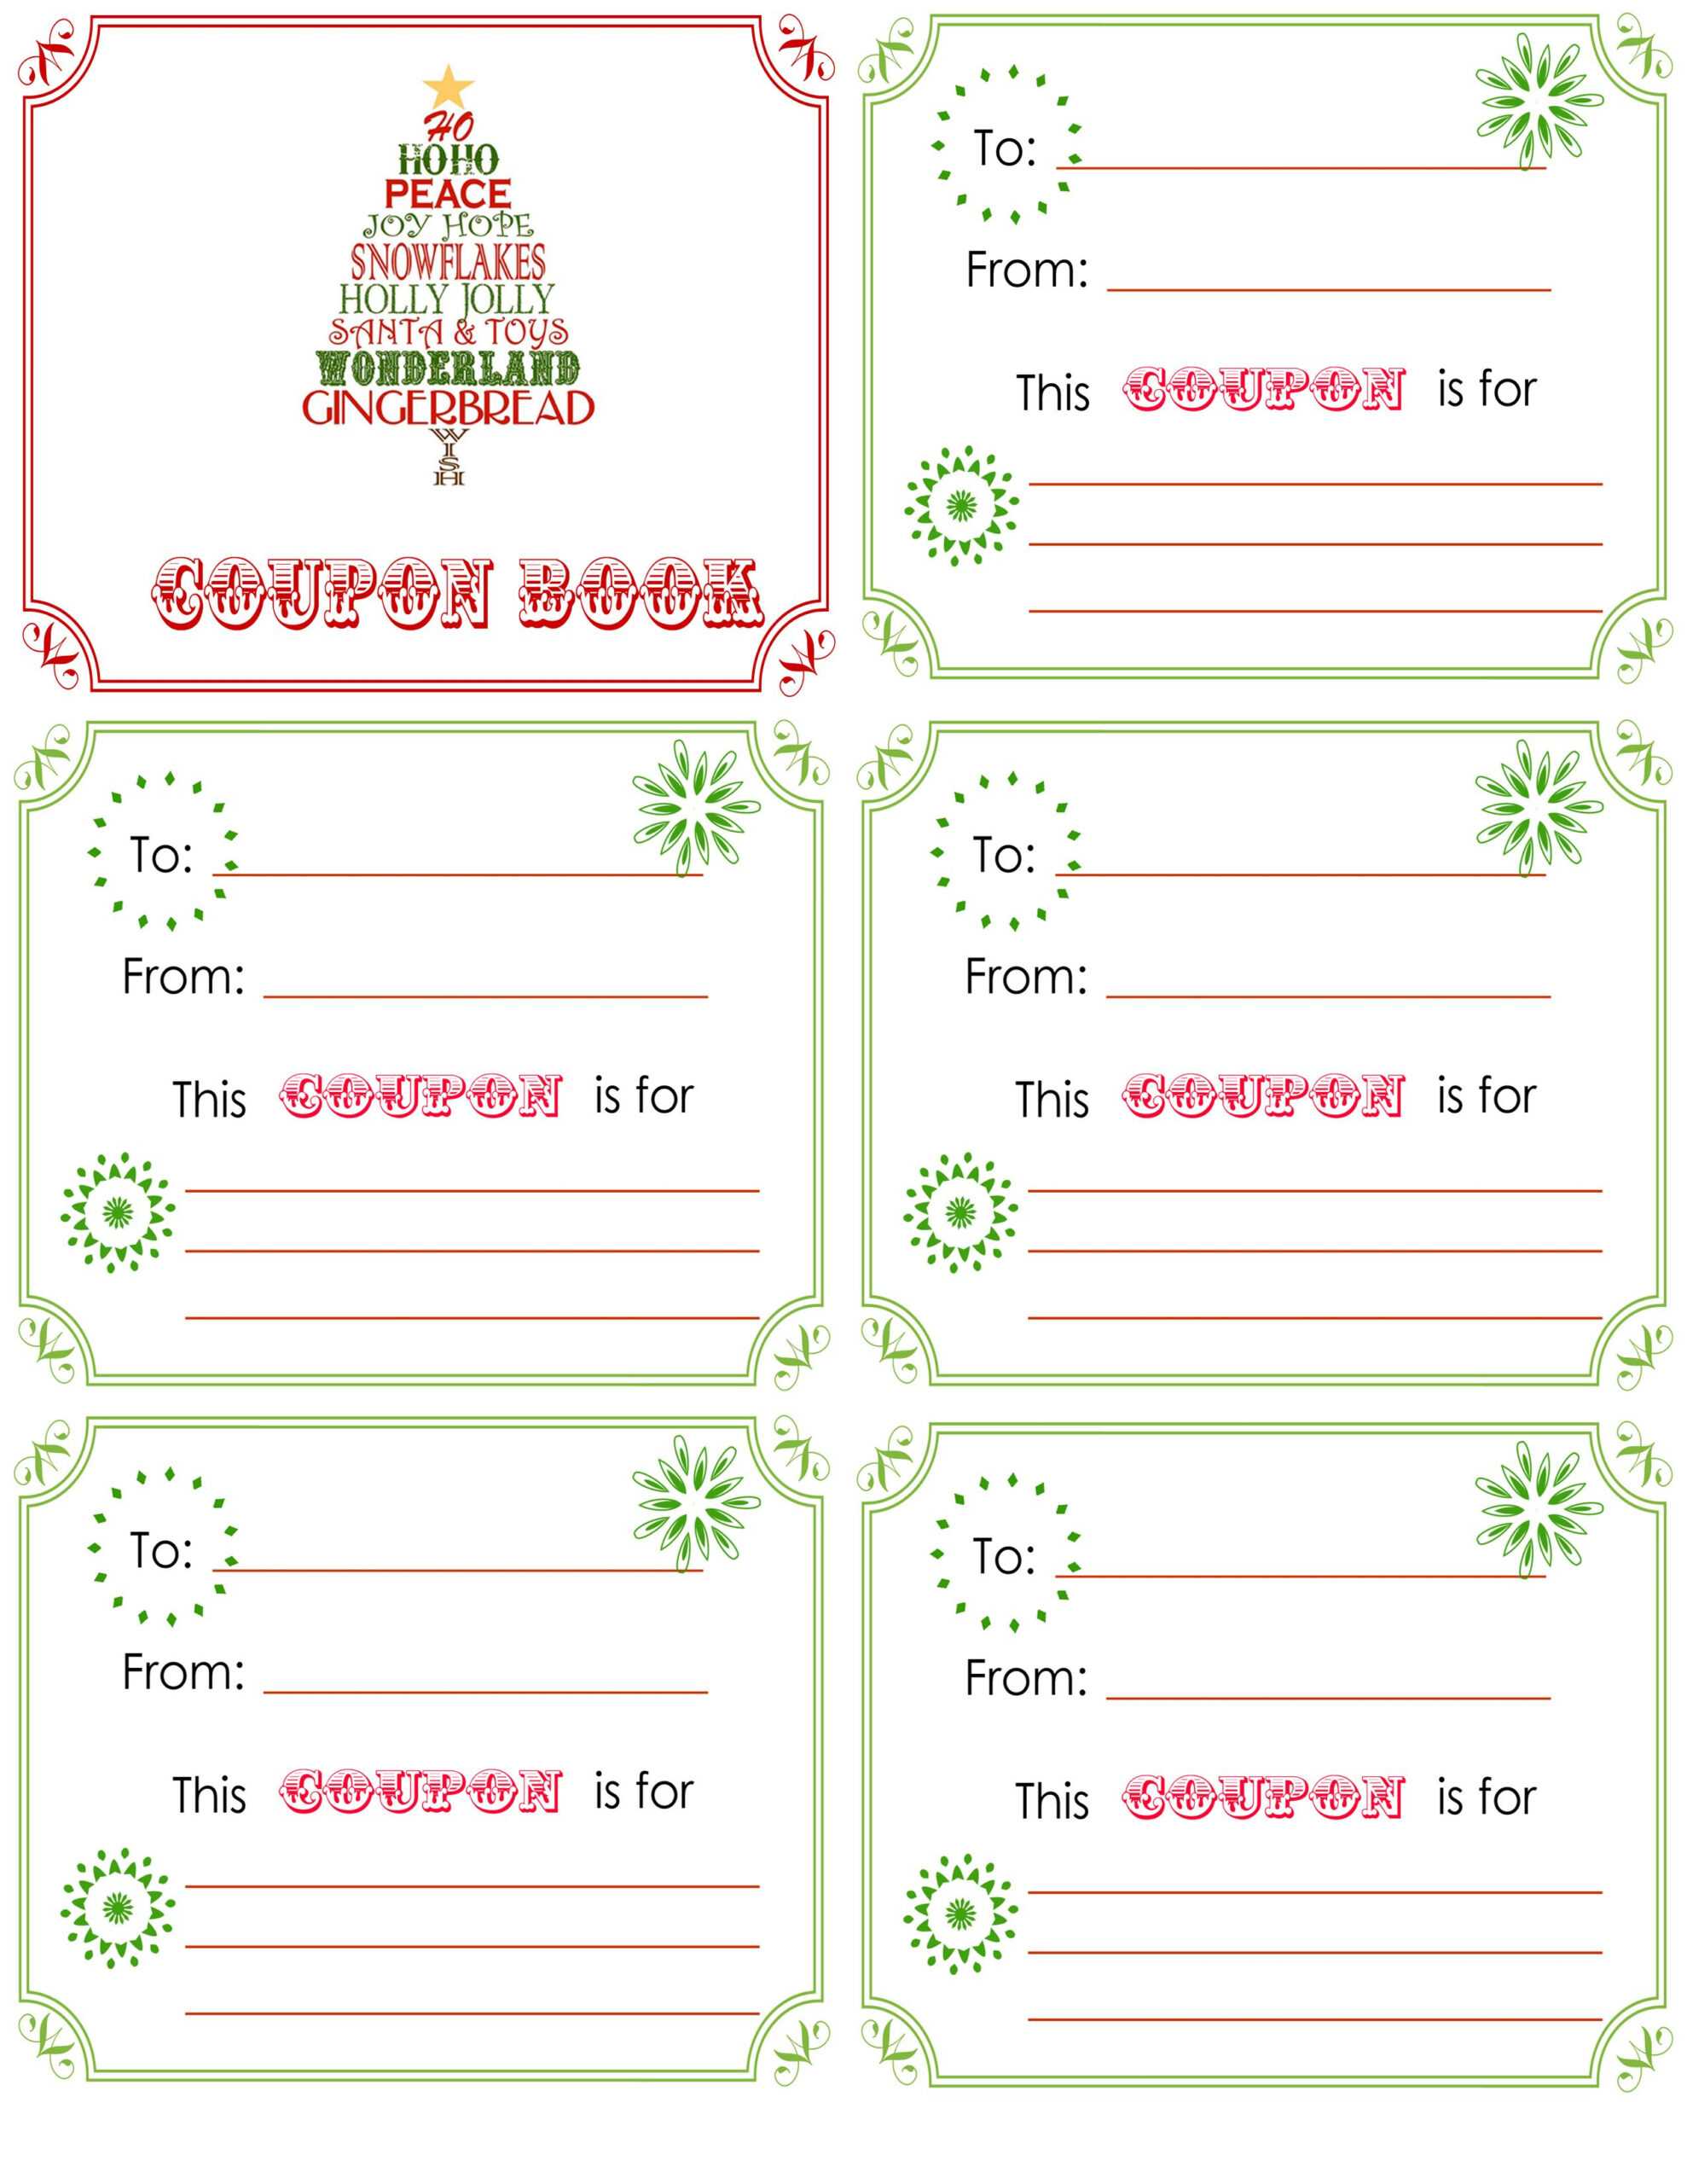 Printable+Christmas+Coupon+Book+Template | Christmas Card Within Homemade Christmas Gift Certificates Templates